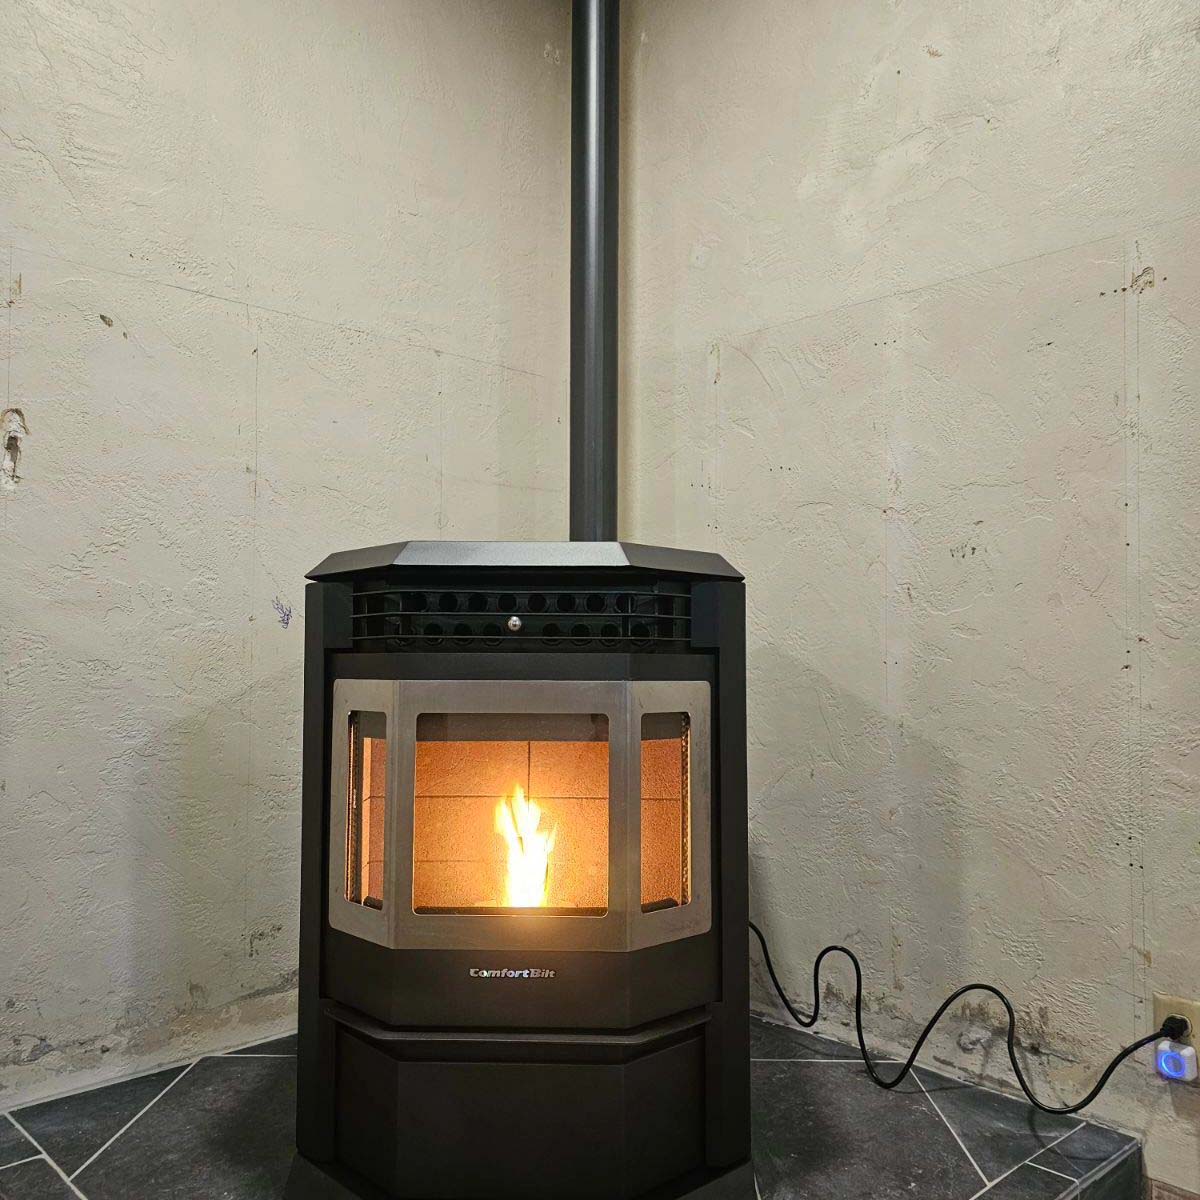 A comfortbilt HP22 pellet stove